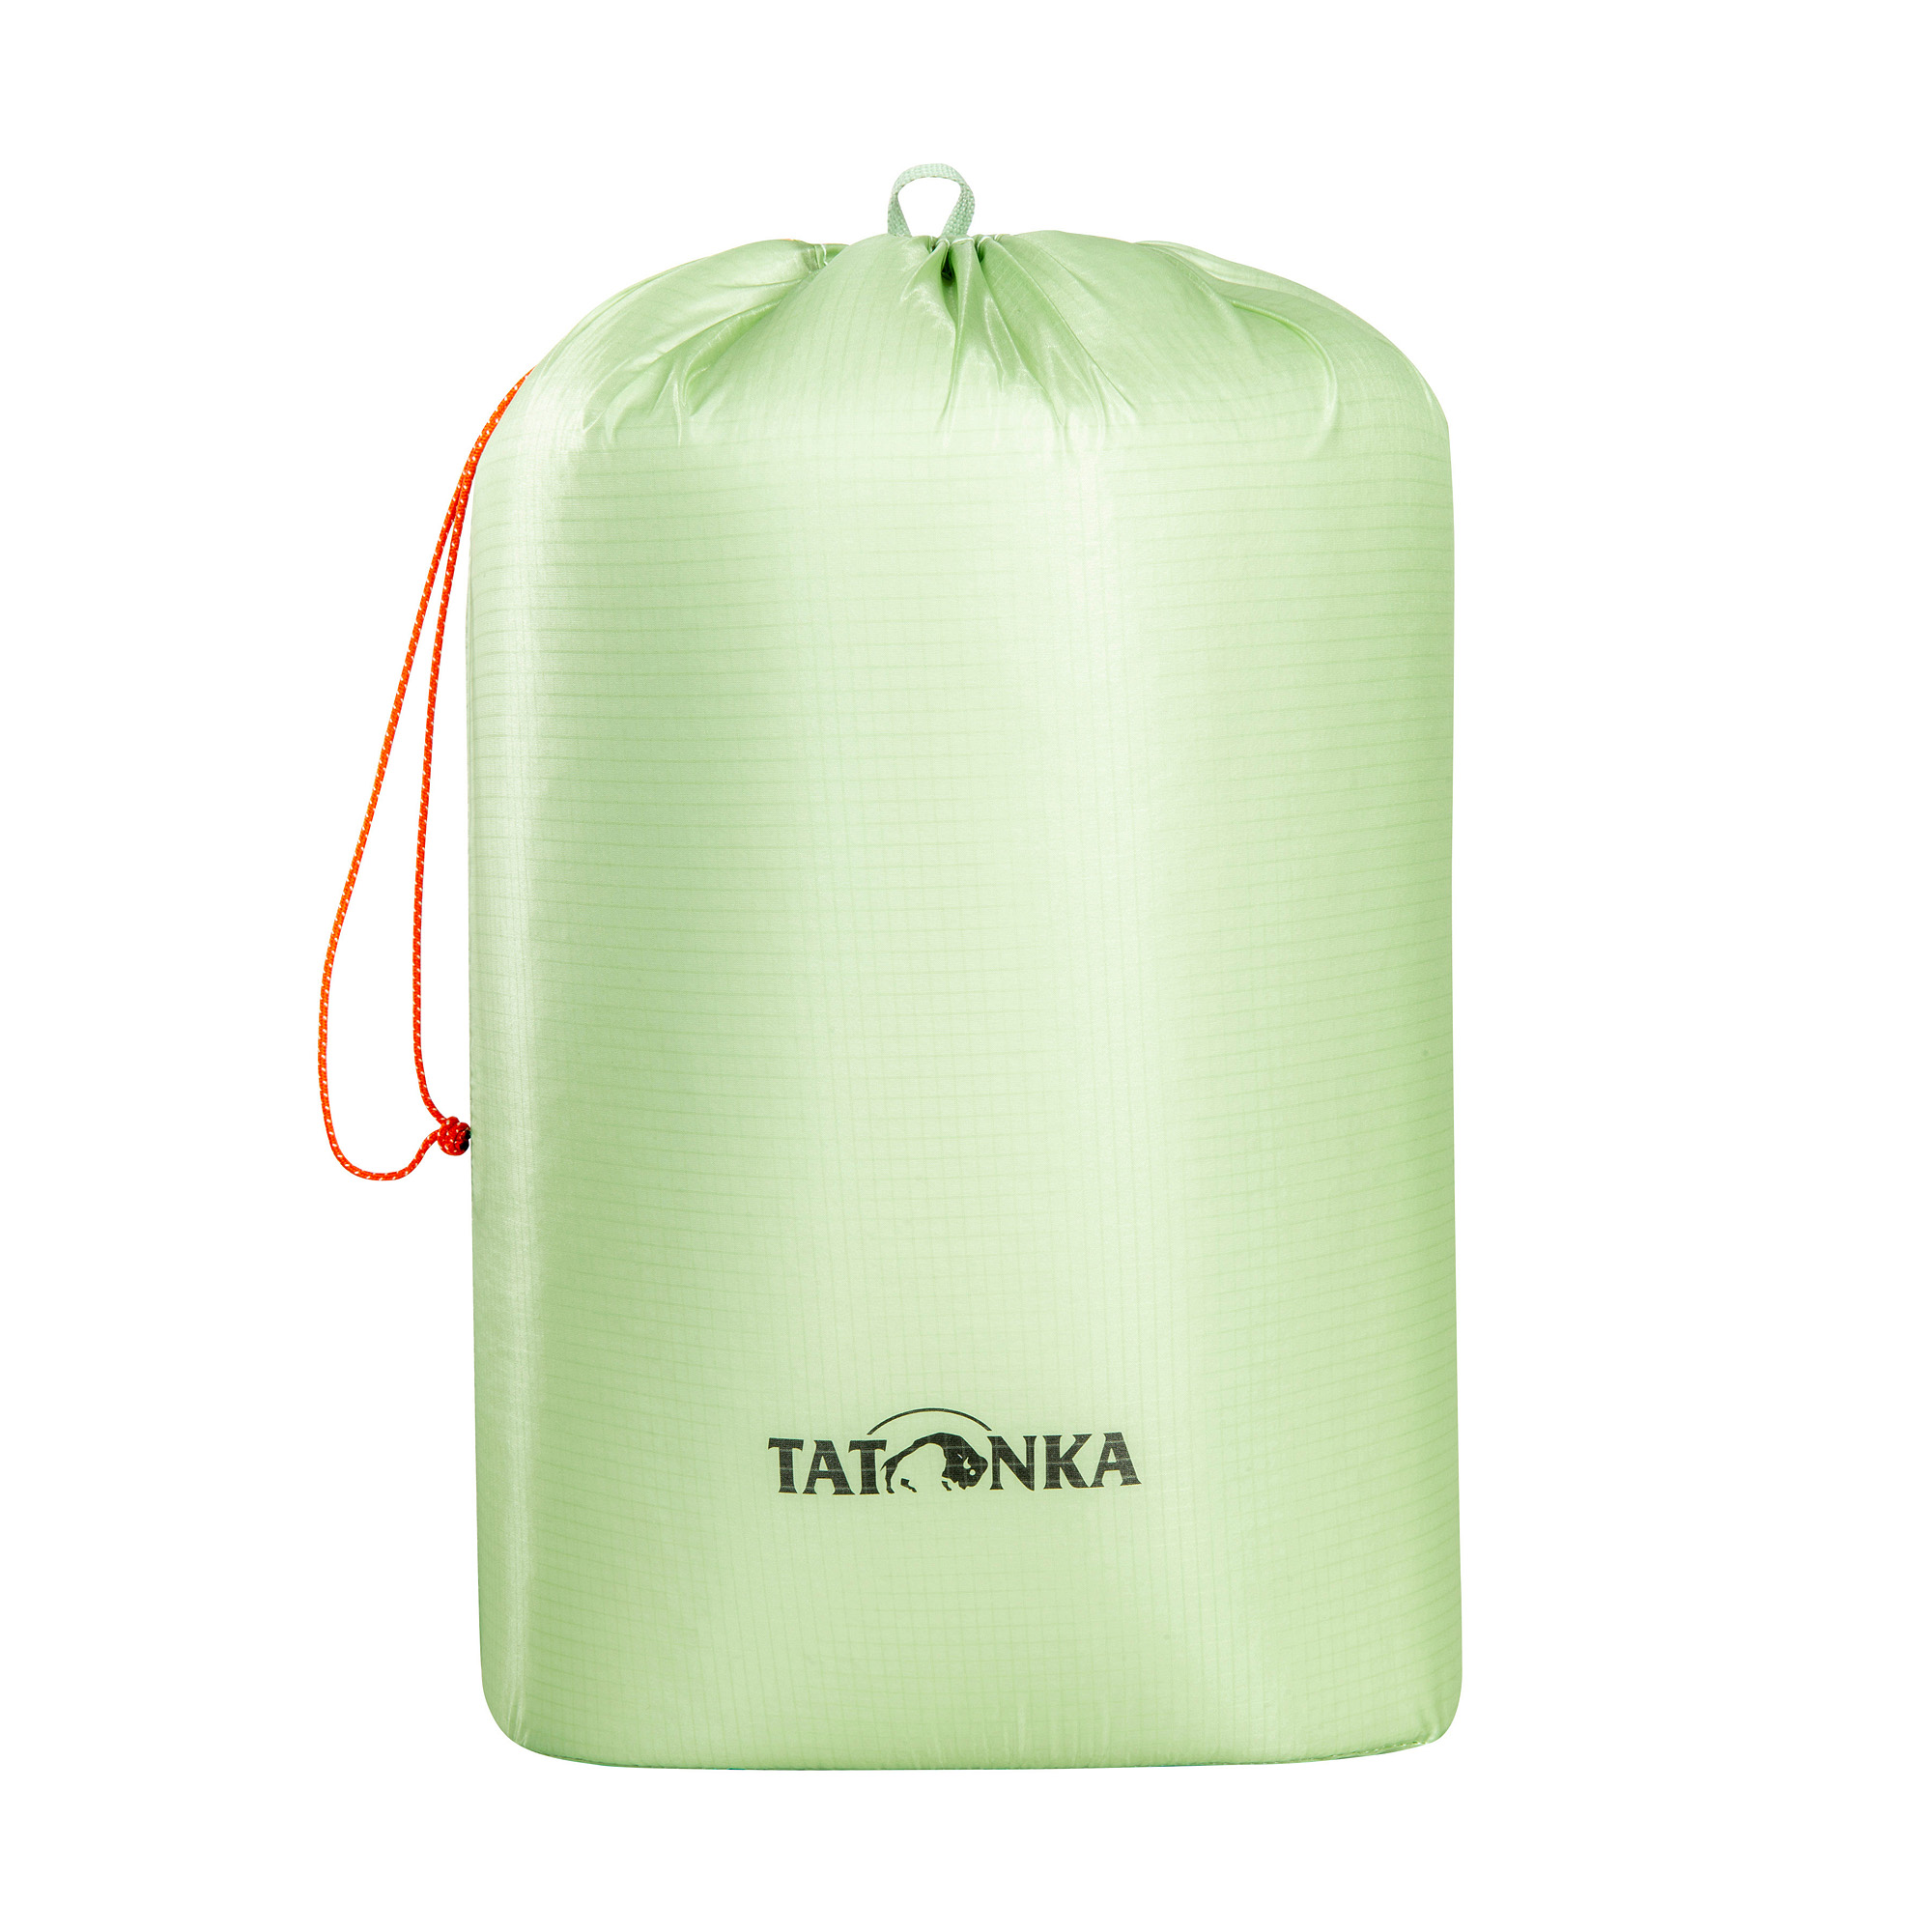 Tatonka SQZY Stuff Bag 10l lighter green grün Reisezubehör 4013236336498